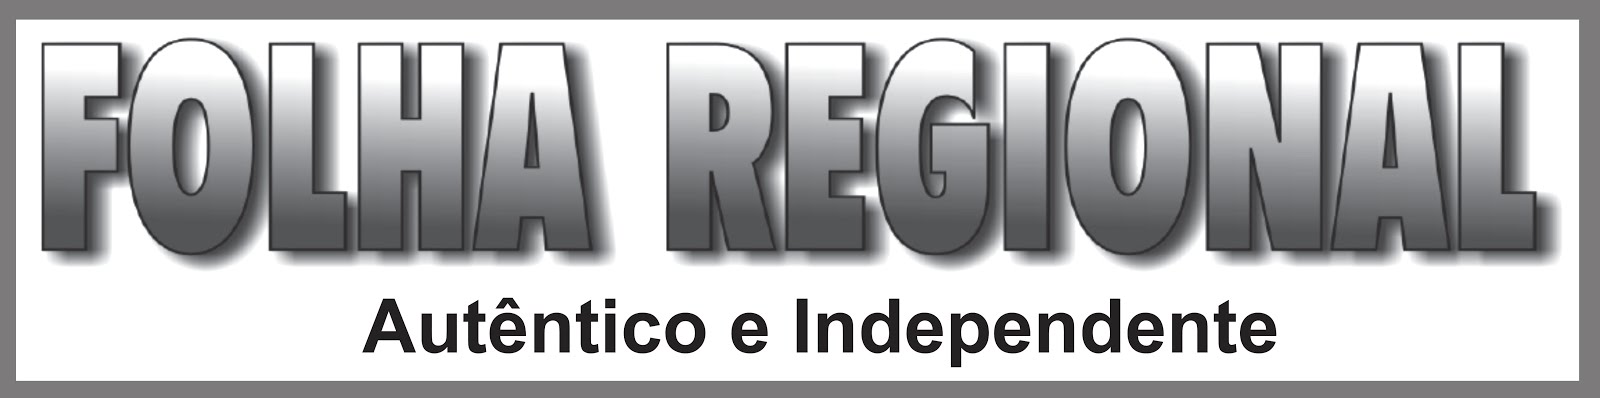 Folha Regional